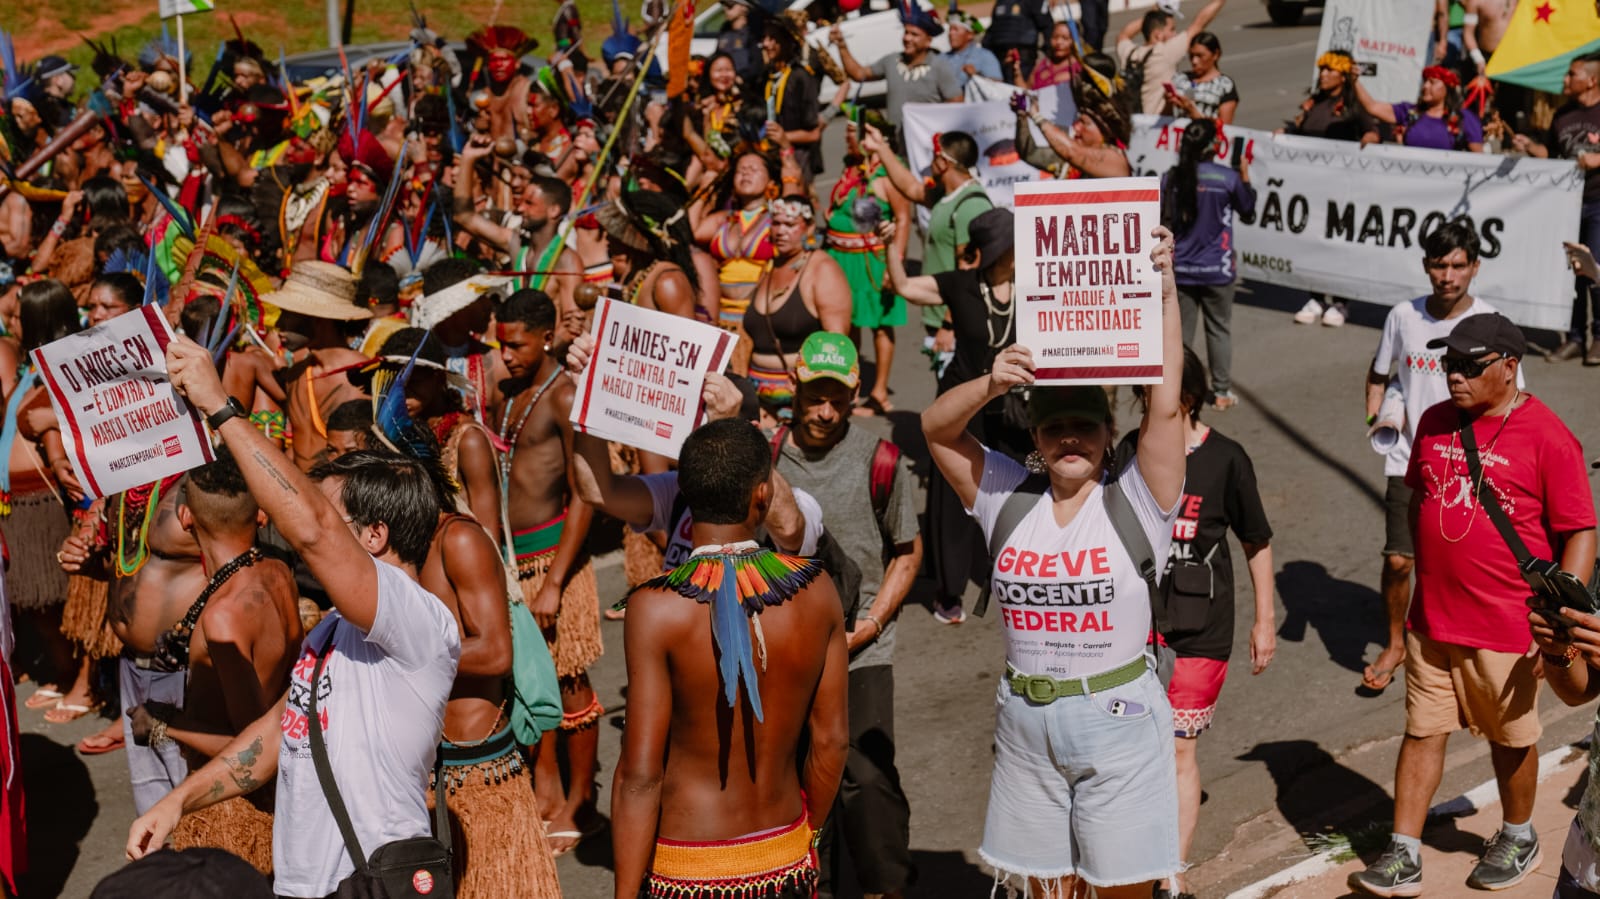 GREVE DA EDUCAÇÃO – ADUFC presente em mais uma semana de mobilização em Brasília e em marcha nacional do povo indígena